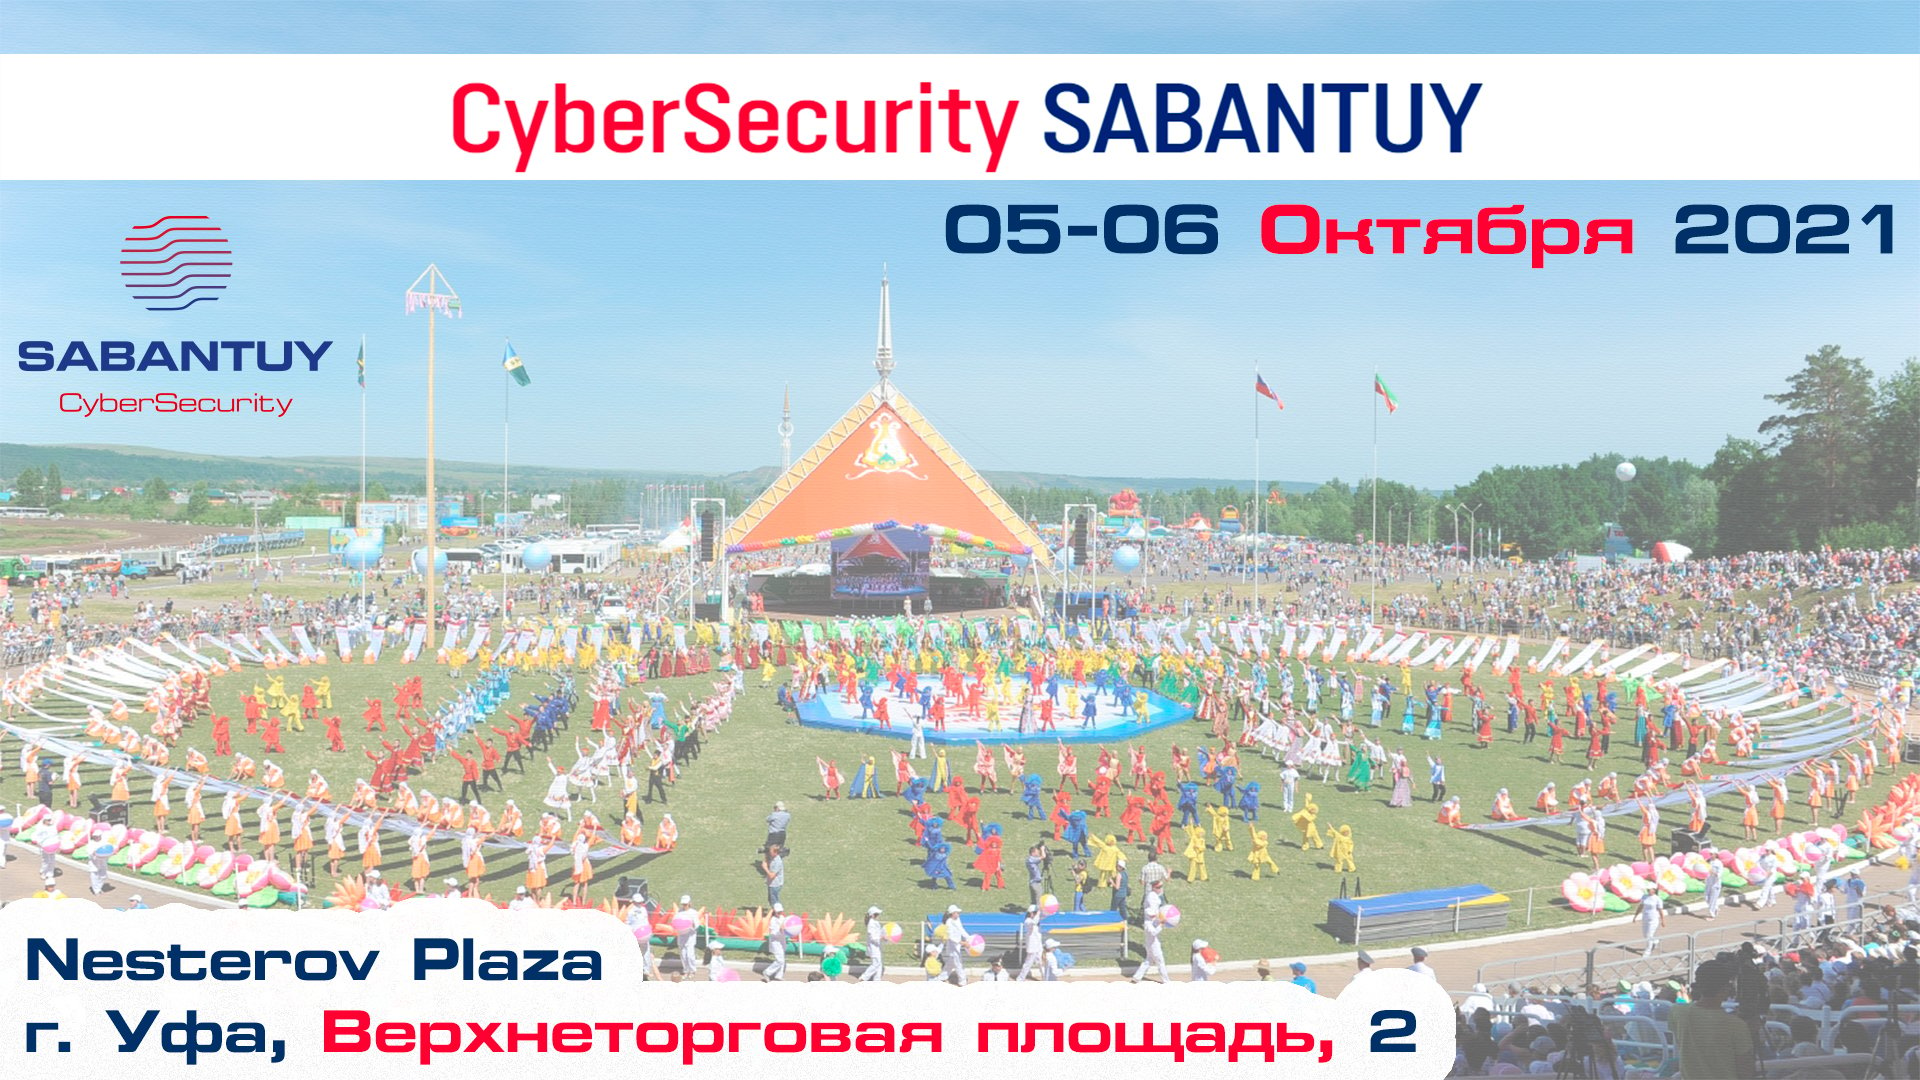 5-6 октября 2021 года в г.Уфе состоится международный форум “CyberSecurity Сабантуй”